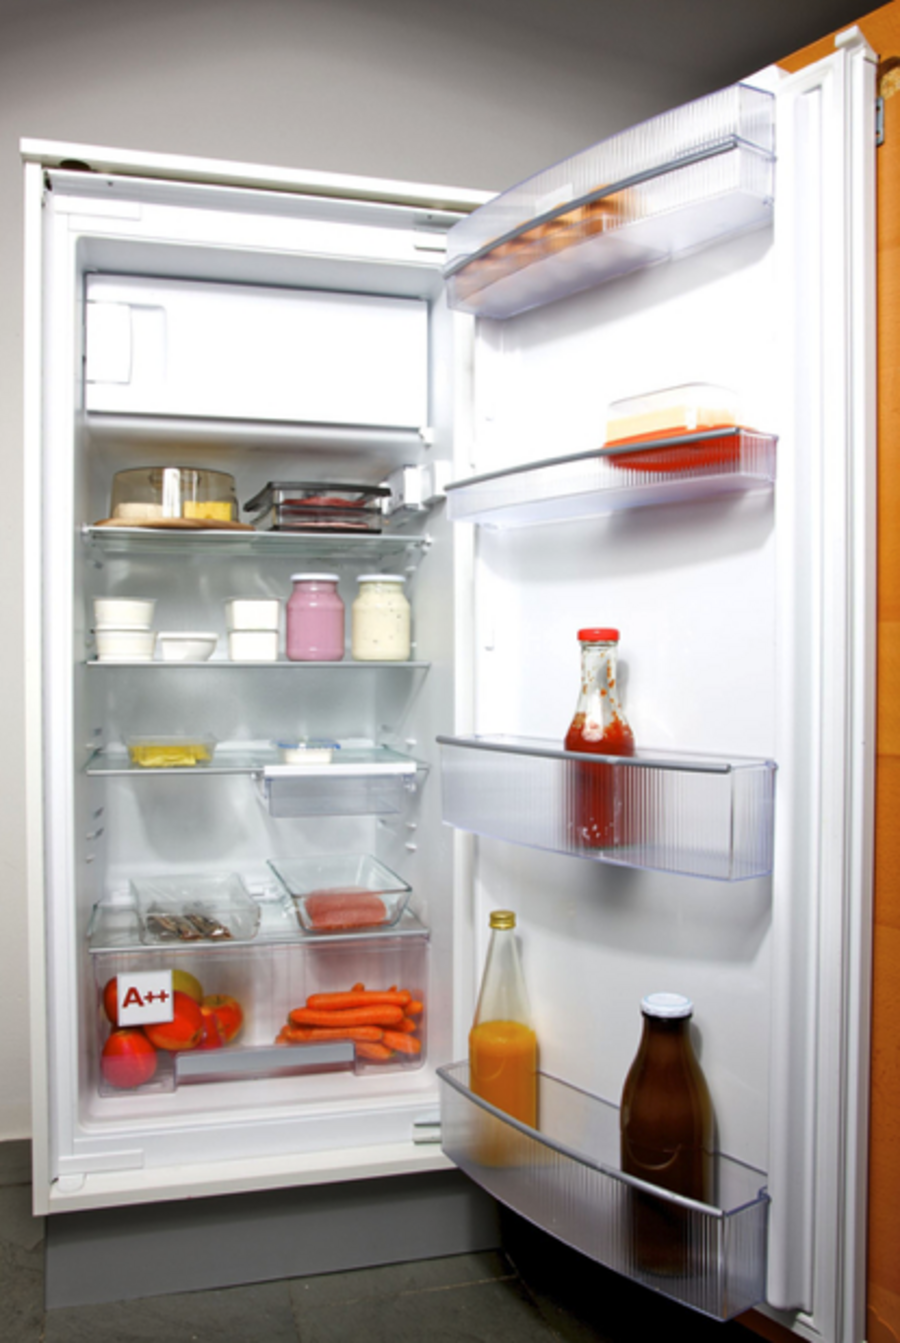 Offener, mit Lebensmitteln gefüllter Kühlschrank.